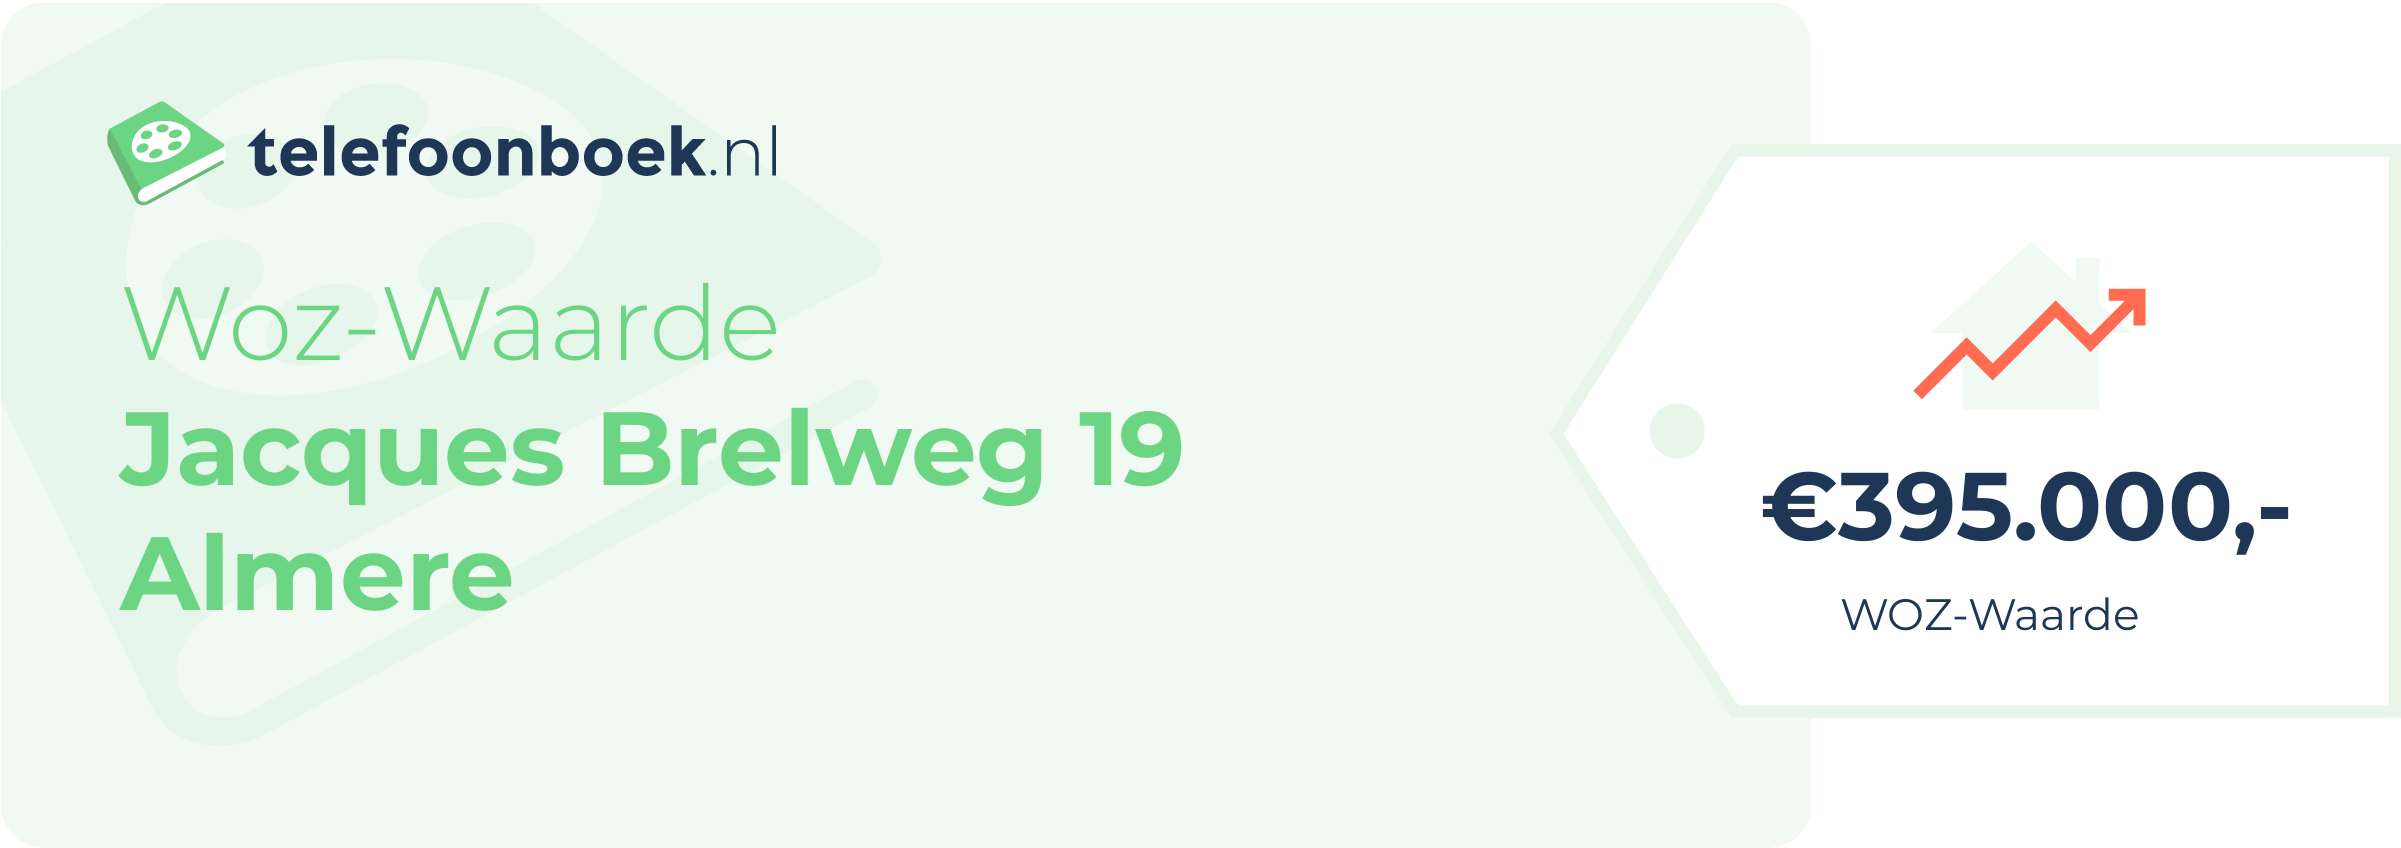 WOZ-waarde Jacques Brelweg 19 Almere